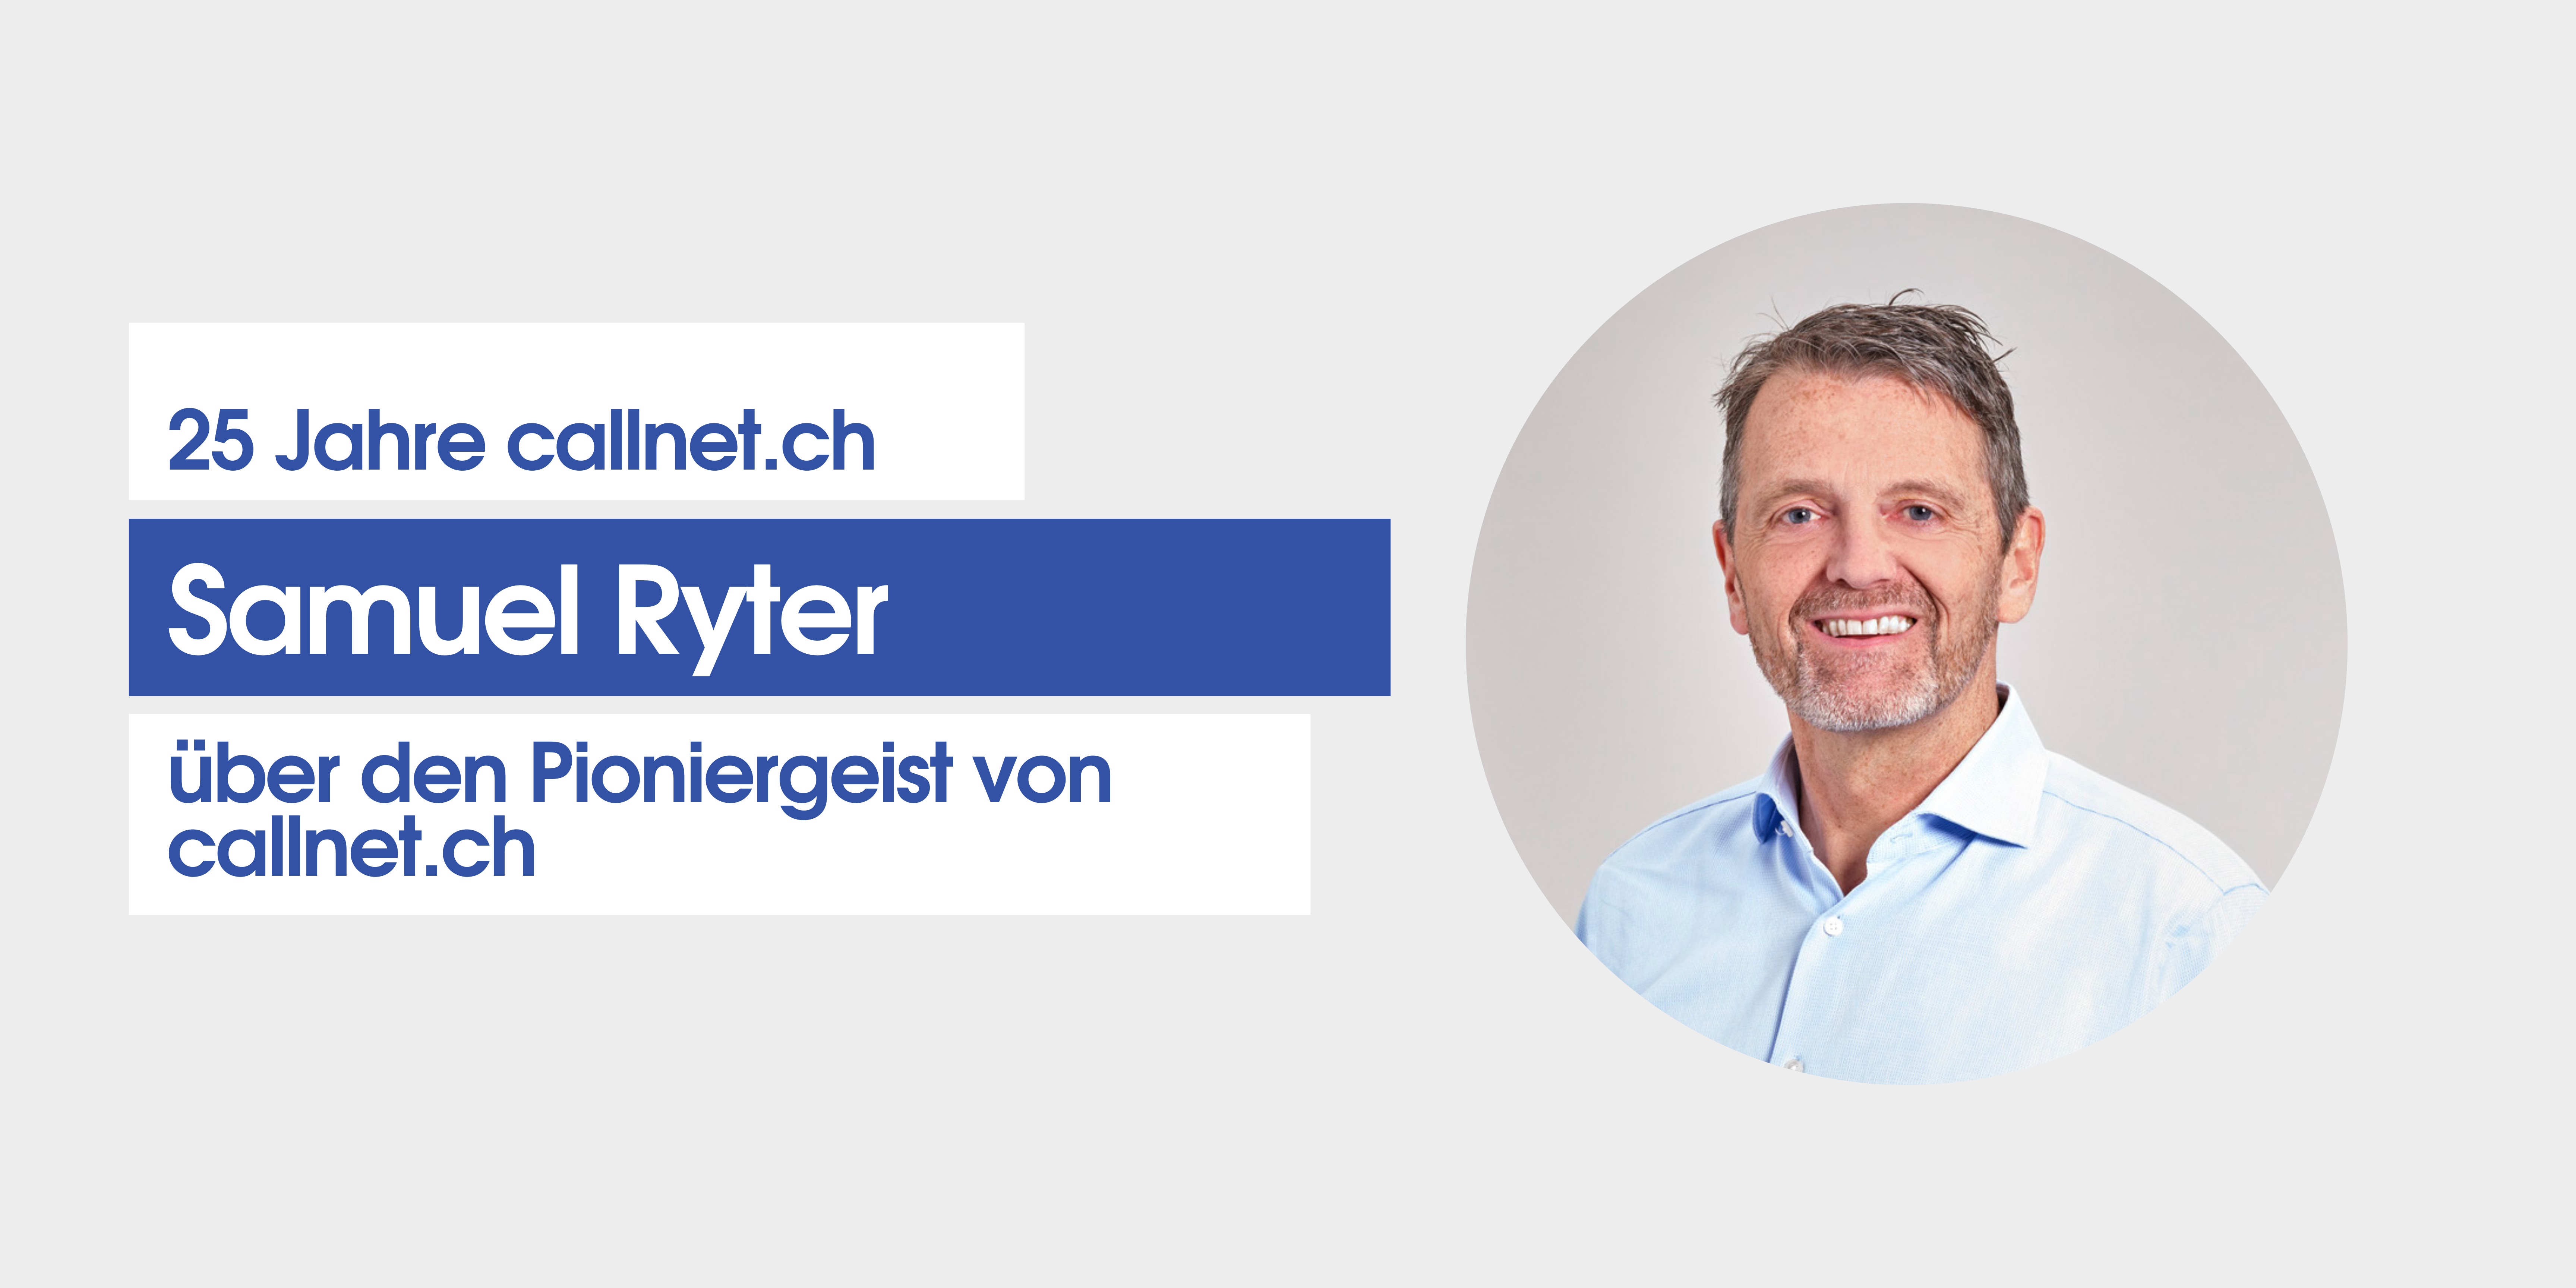 Samuel Ryter über 25 Jahre callnet.ch